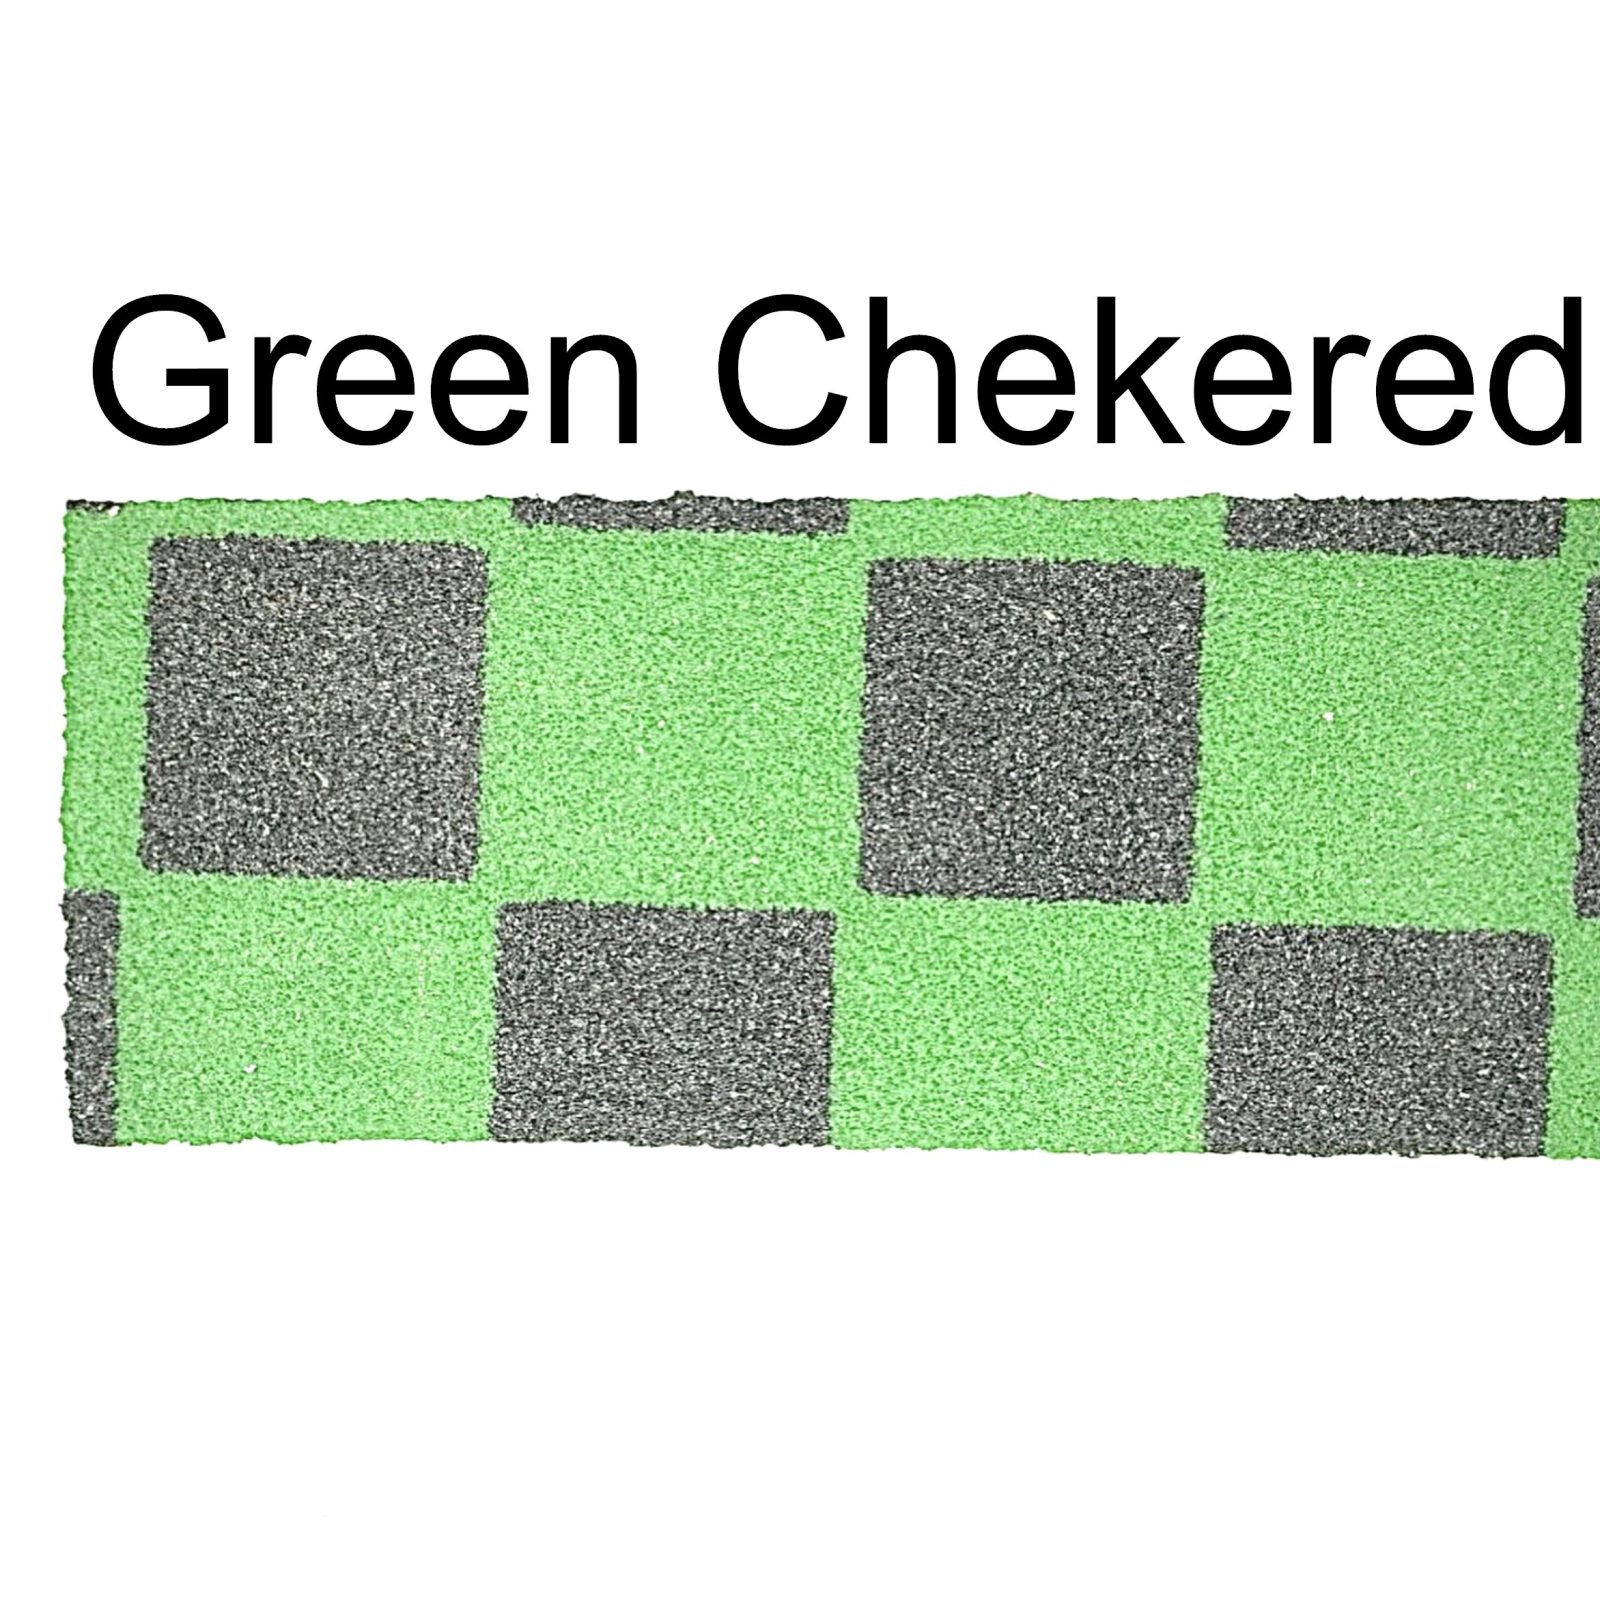 https://roswellsskateboards.com/wp-content/uploads/2021/11/Fingerboard-Grip-Tape-Green-Chekered.jpg